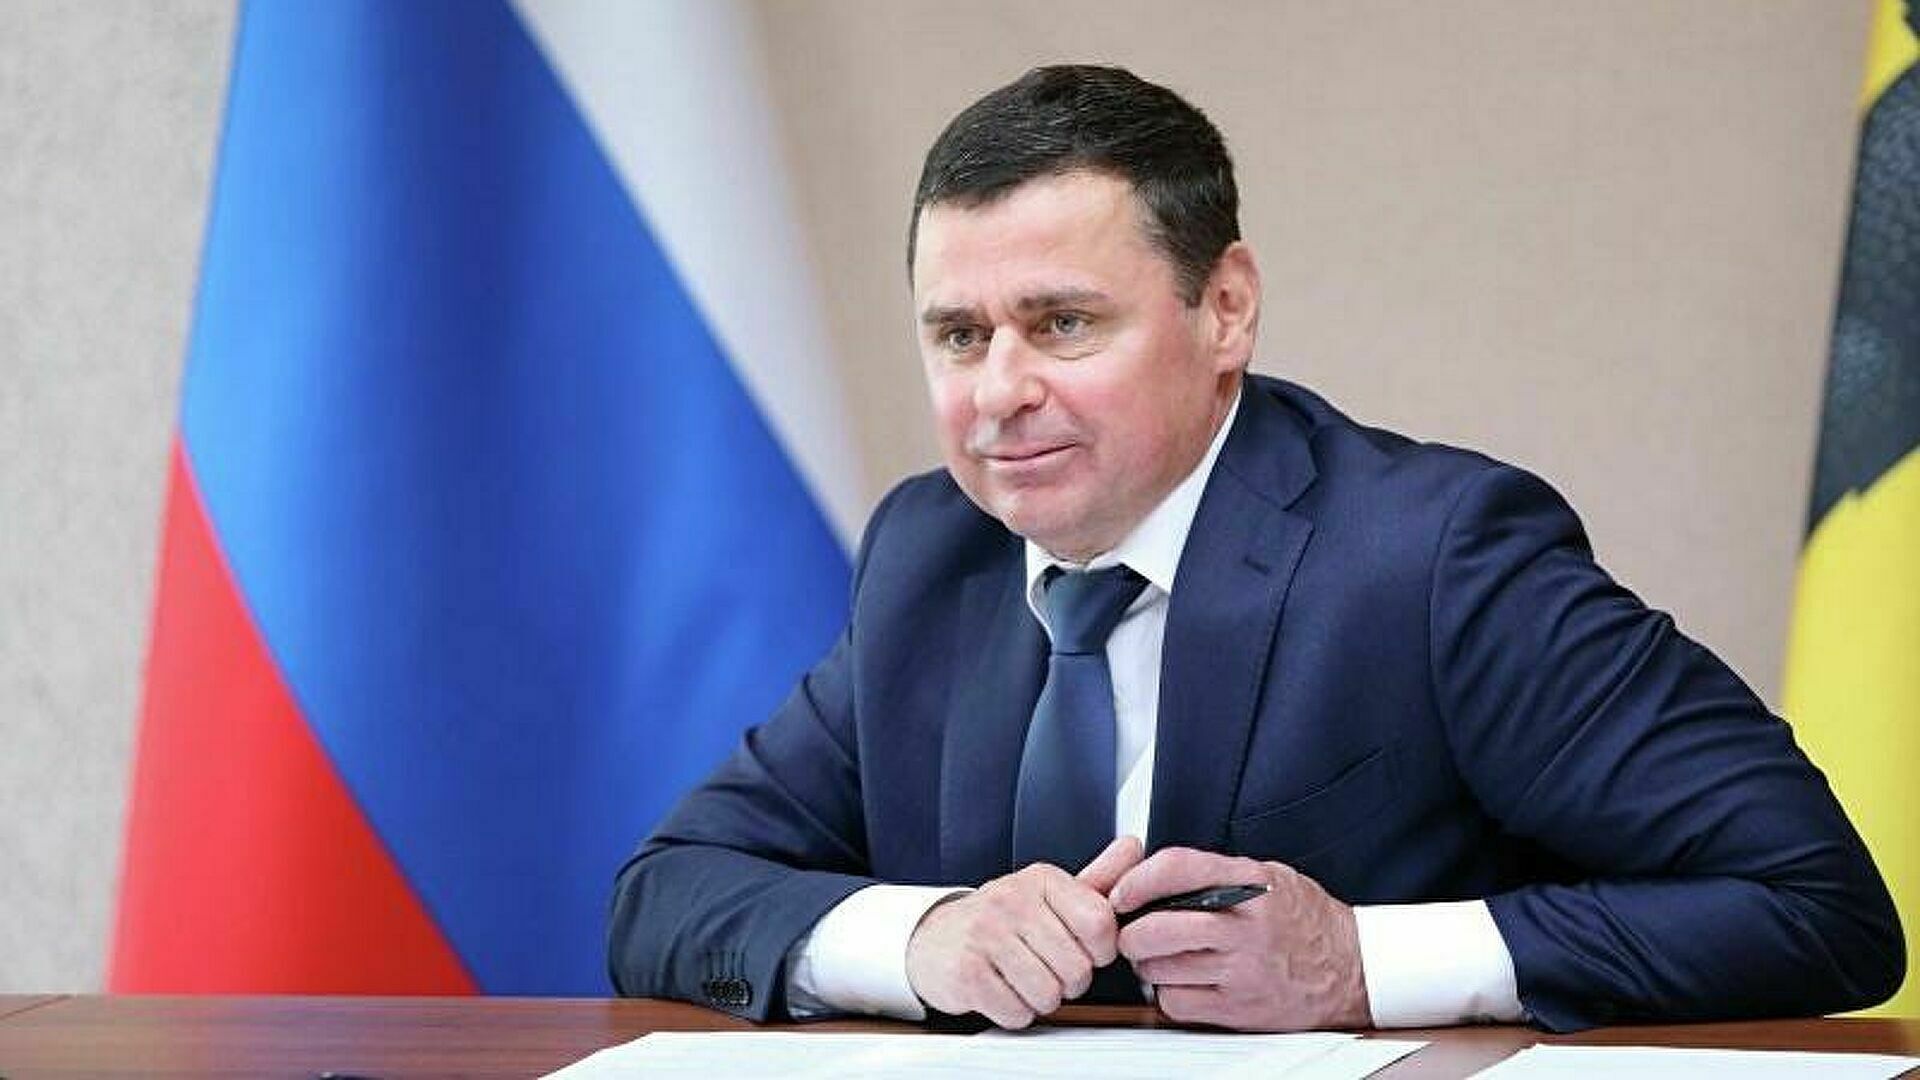 Путин принял отставку главы Ярославской области и назначил его помощником президента